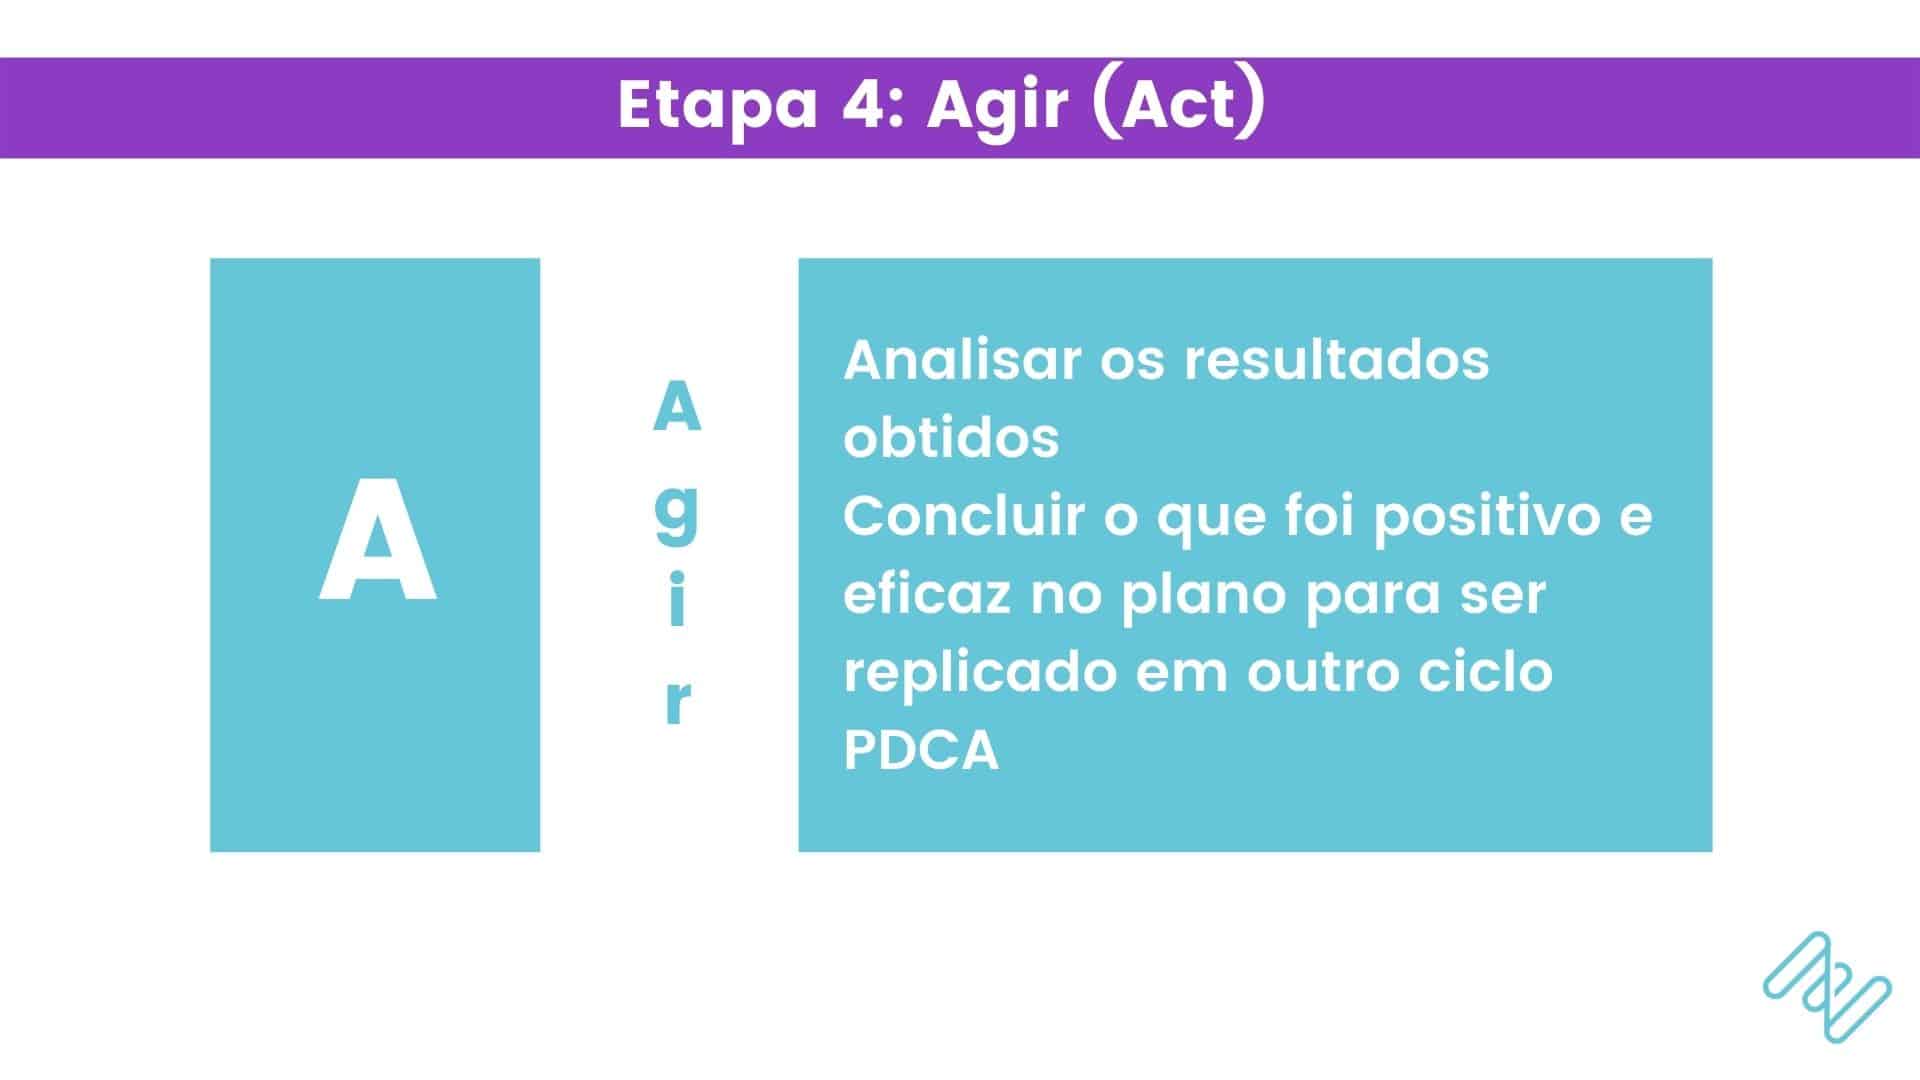 Quarta Etapa, o "Agir" (act) no ciclo PDCA
